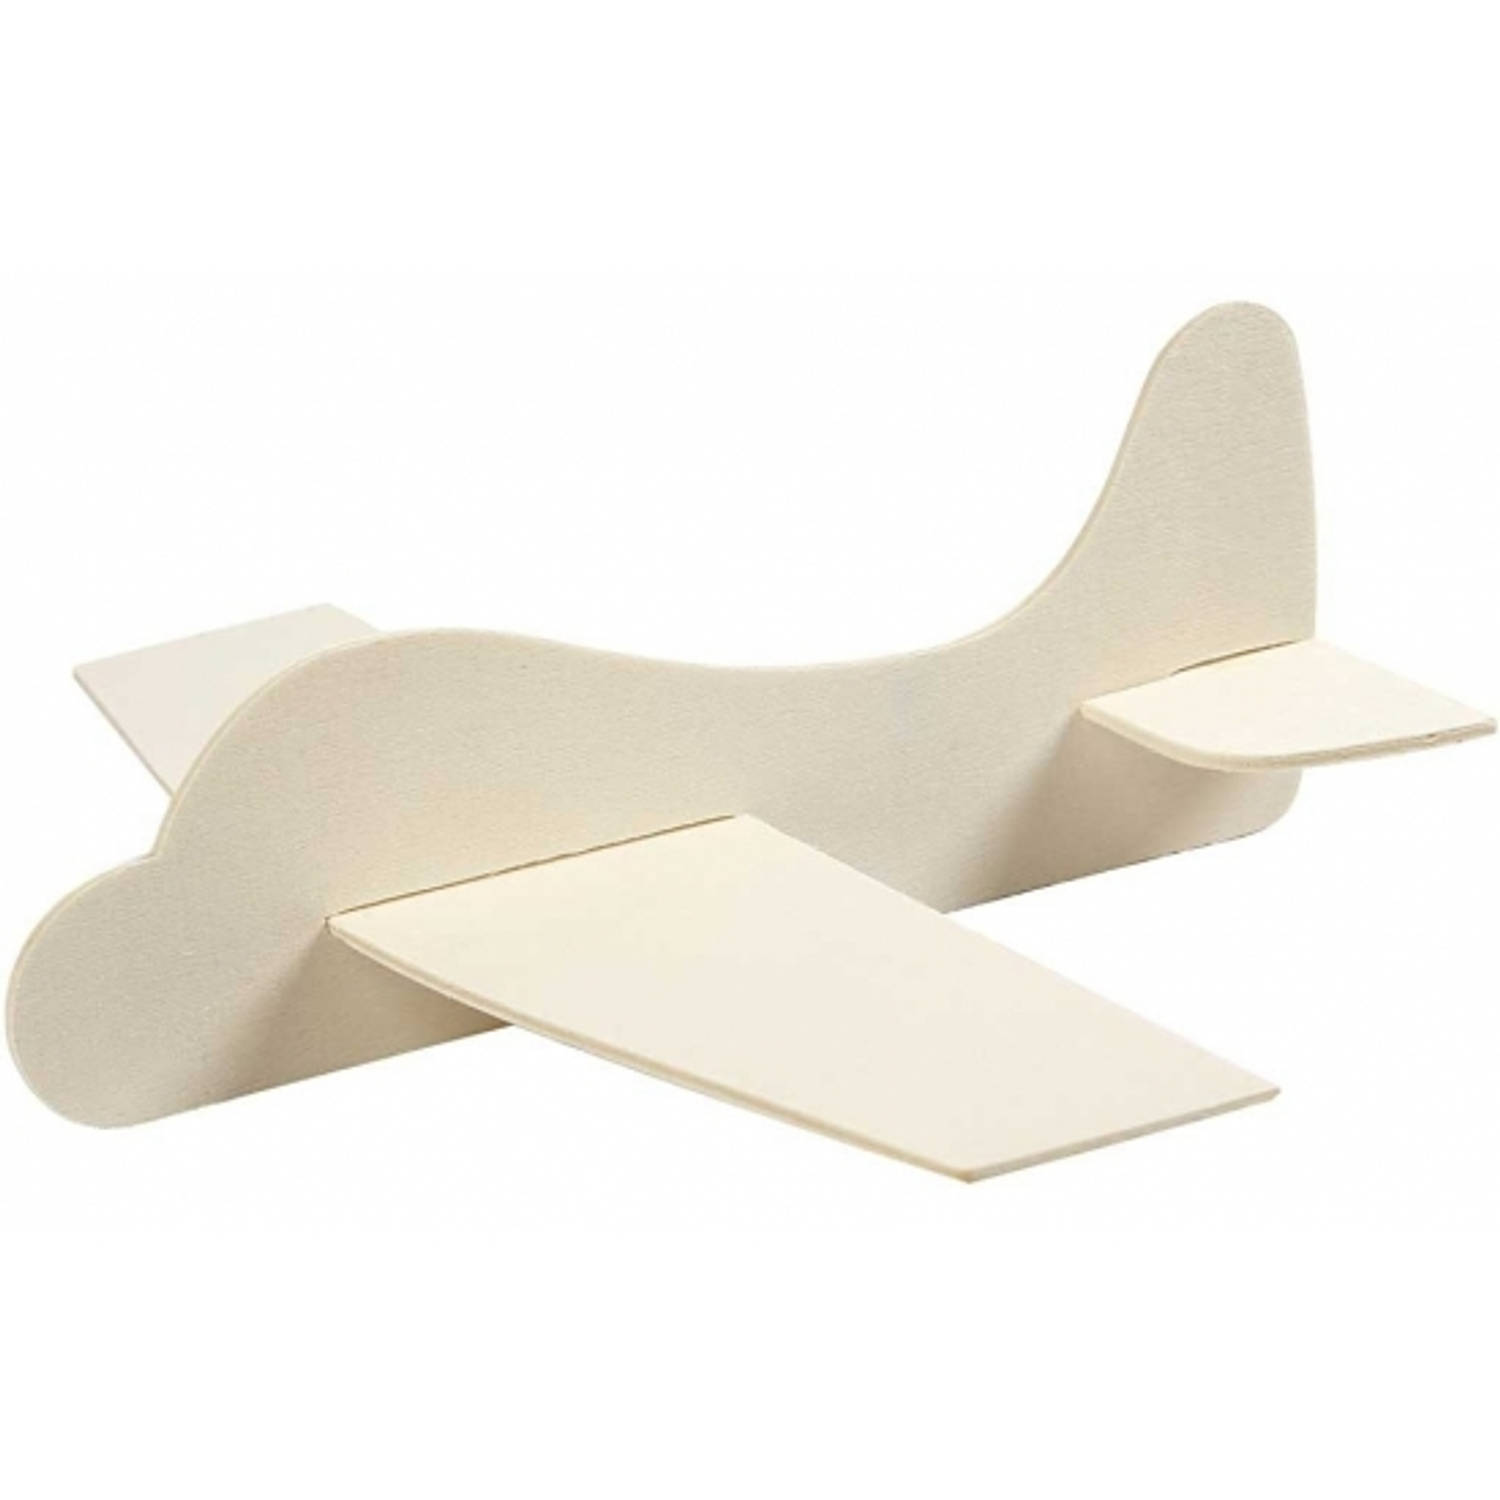 Chemie hoogtepunt negatief Vliegtuig van hout 21.5 x 25.5 cm bouwpakket - Speelgoed vliegtuigen |  Blokker